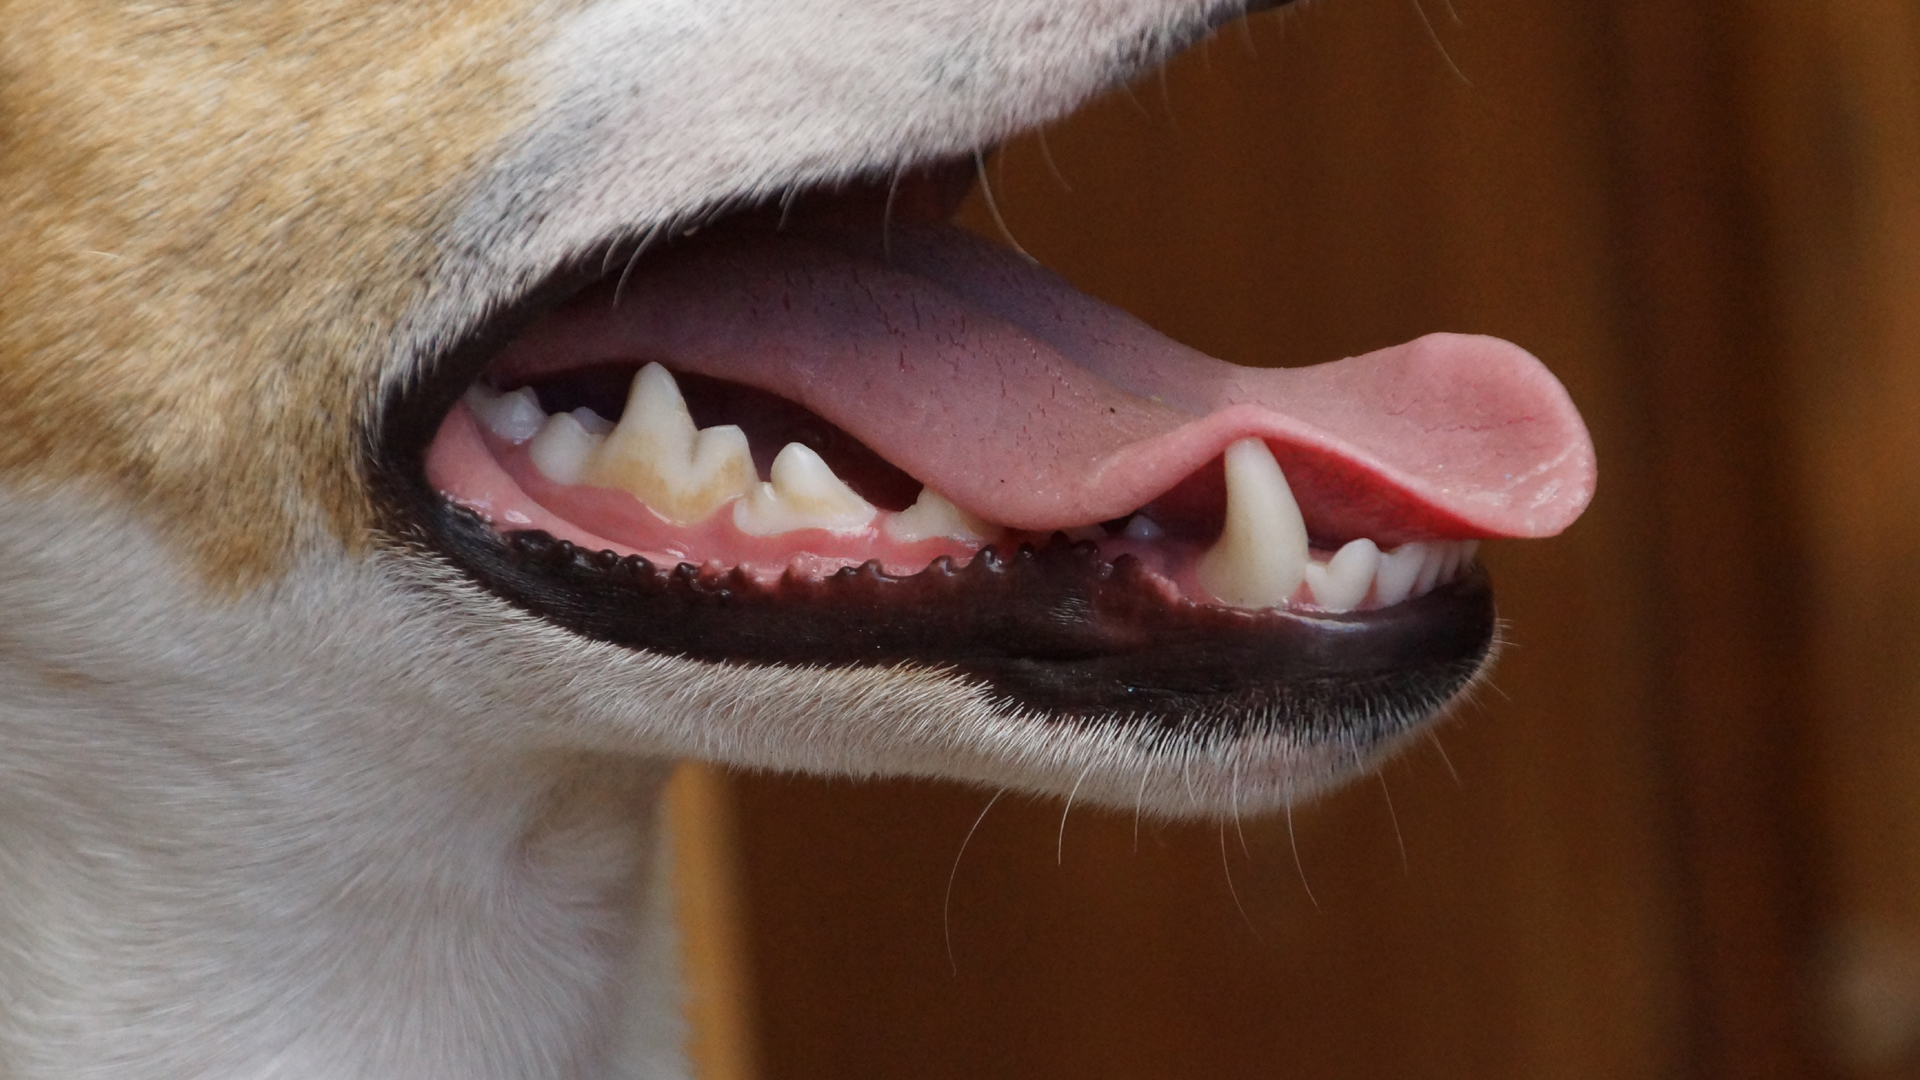 Zahnpflege Hund